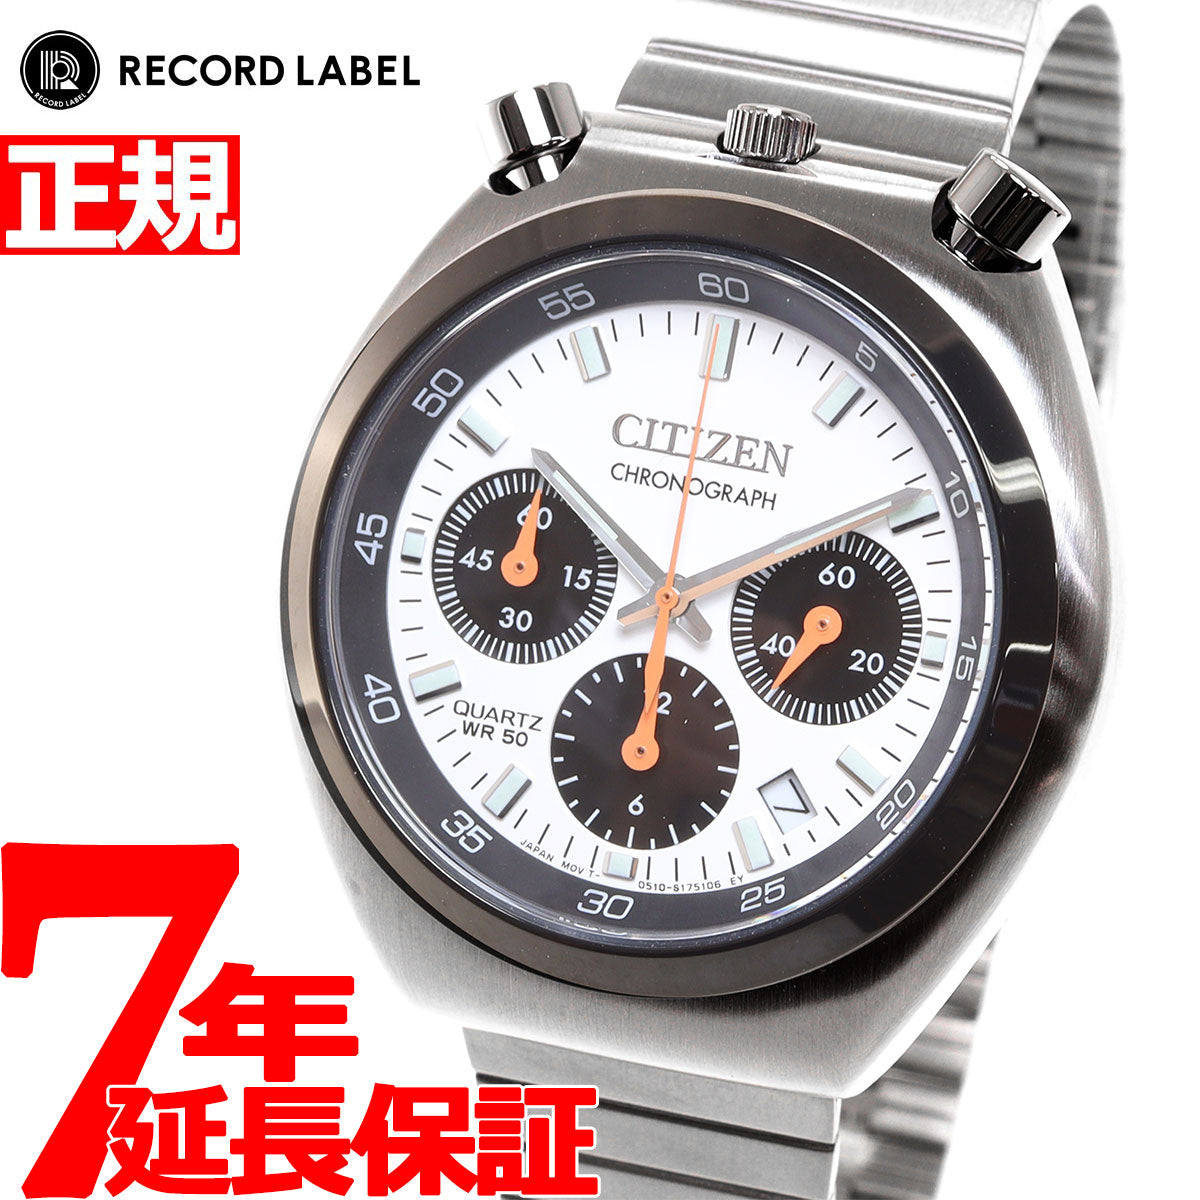 シチズンコレクション レコードレーベル ツノクロノ 特定店取扱いモデル AN3660-81A 腕時計 メンズ ホワイト CITIZEN COLLECTION RECORD LABEL TSUNO CHRONO